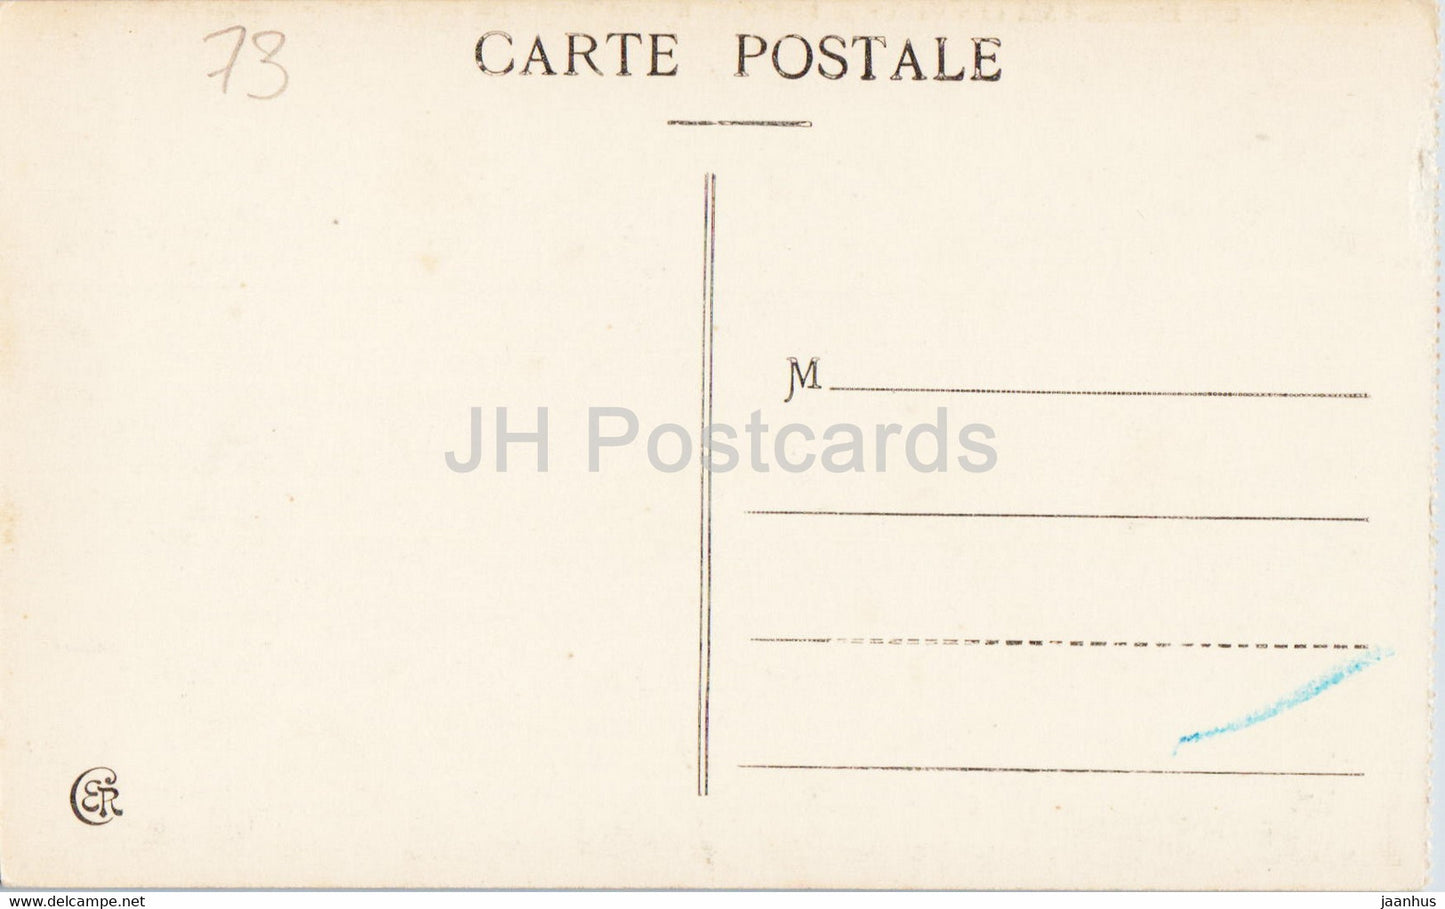 Aix les Bains - Le Lac du Bourget - Chateau de Chatillon - 800 - old postcard - France - unused